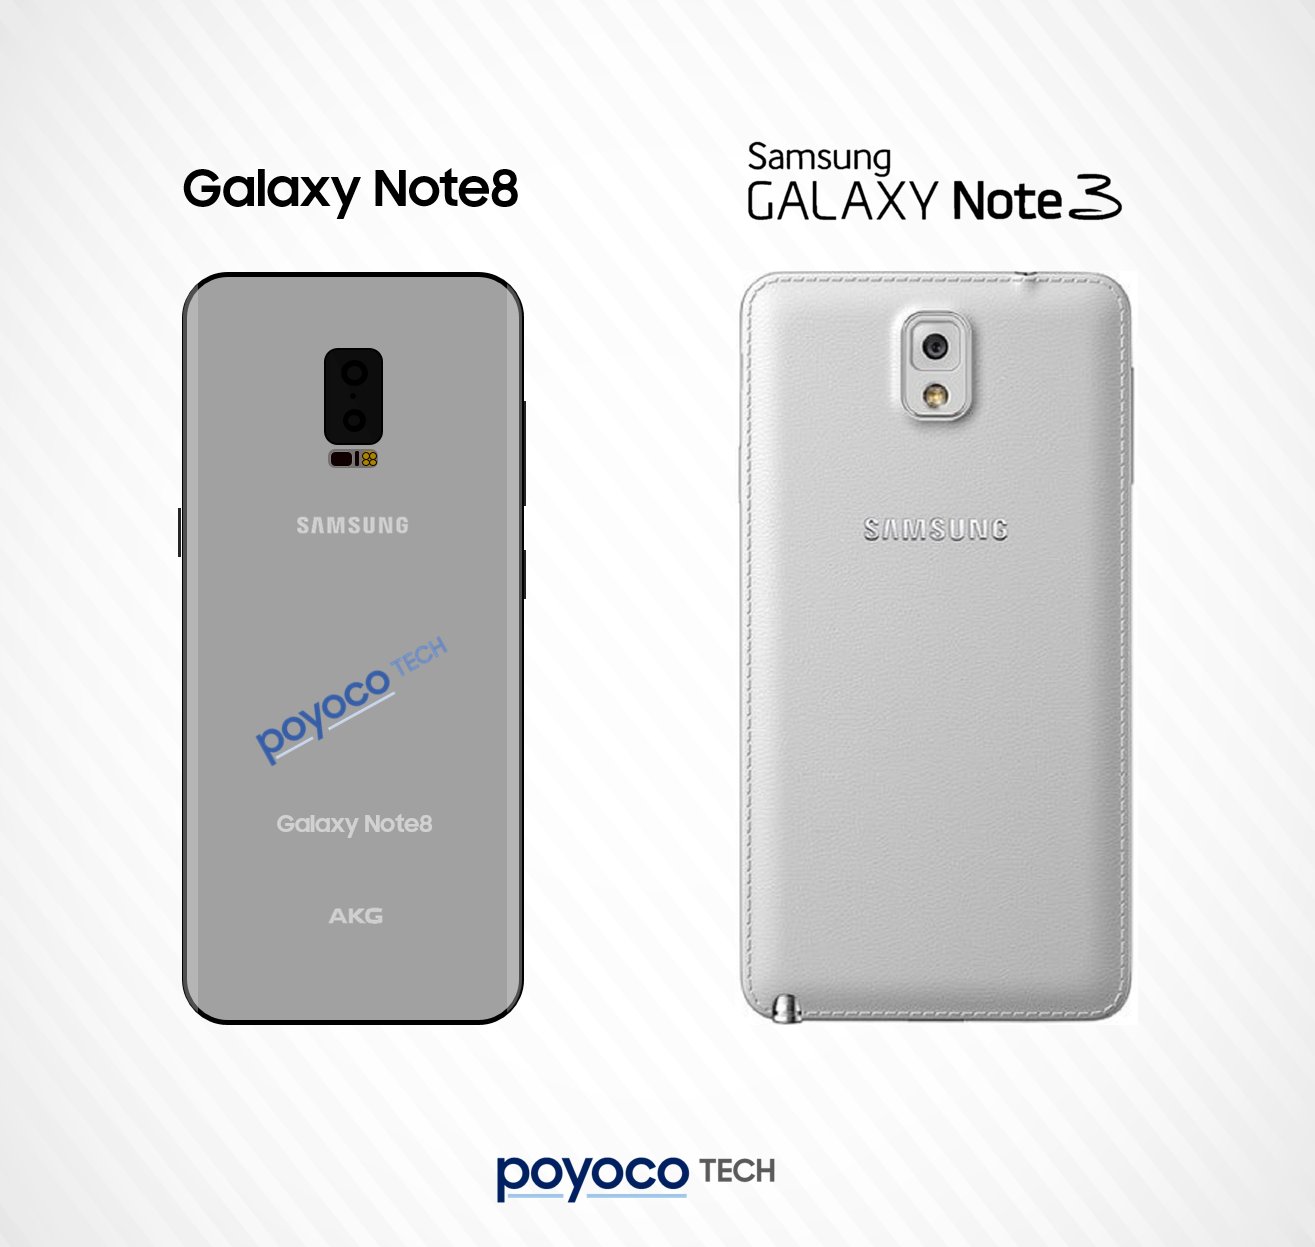 Comparación de dorsos del Samsung Galaxy Note 8 y Note 3.